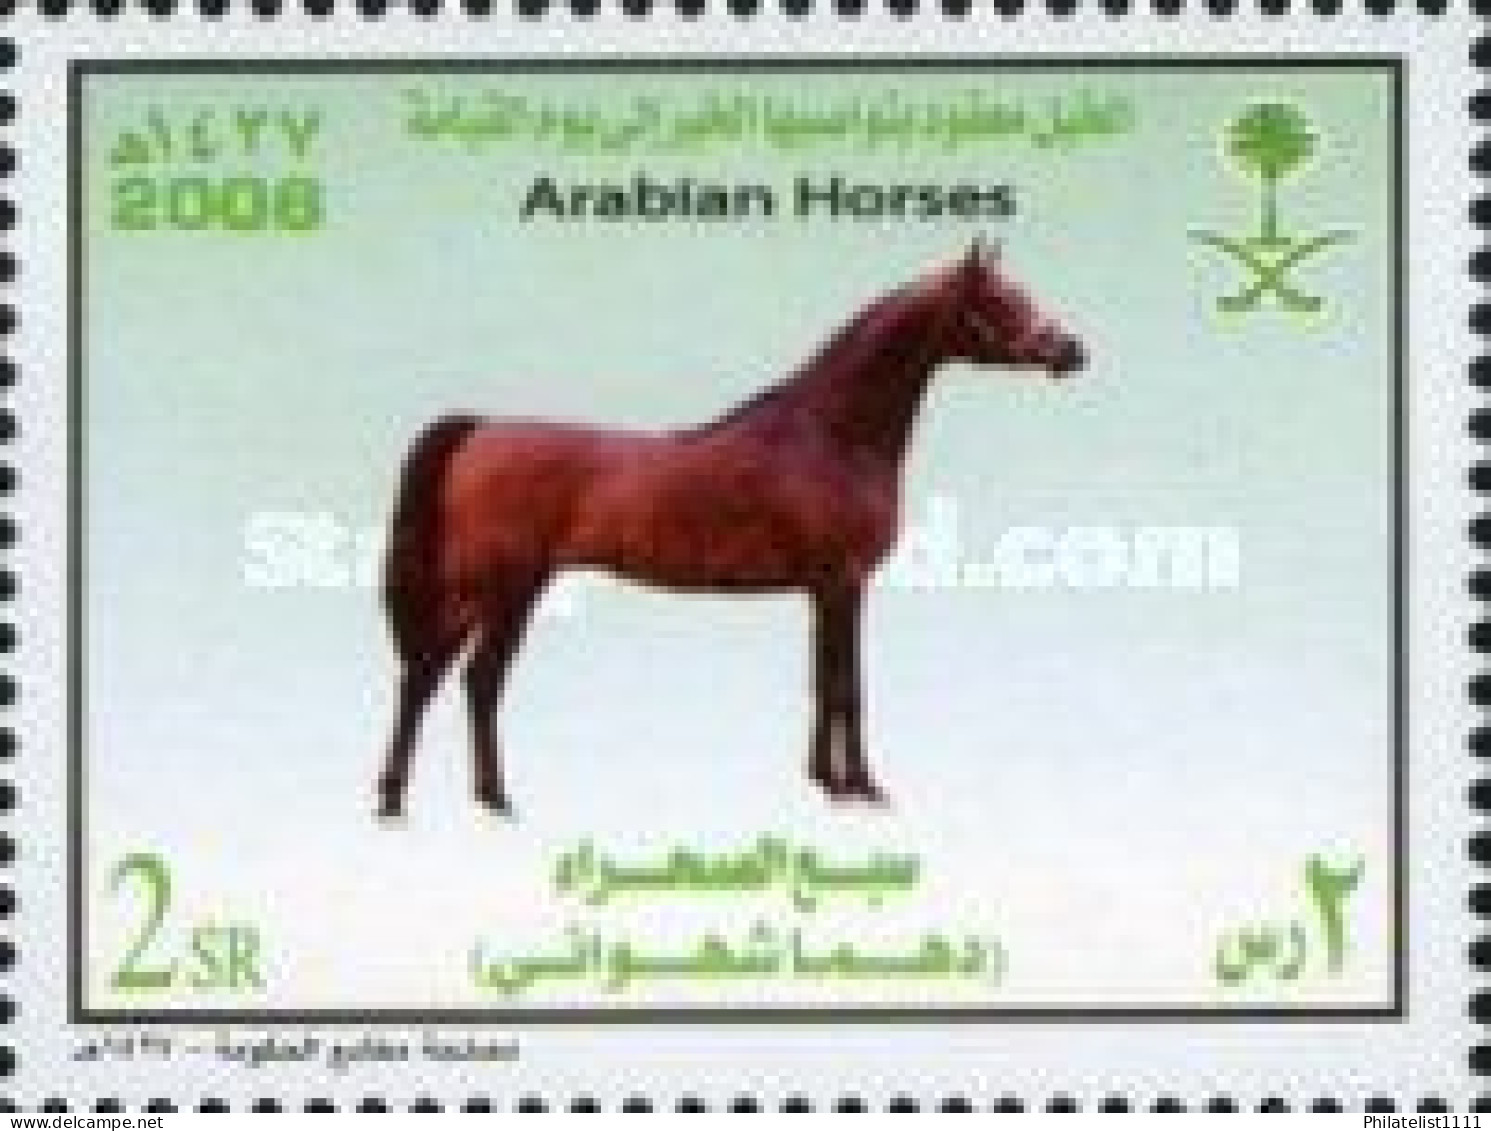 Horses - Saudi Arabia